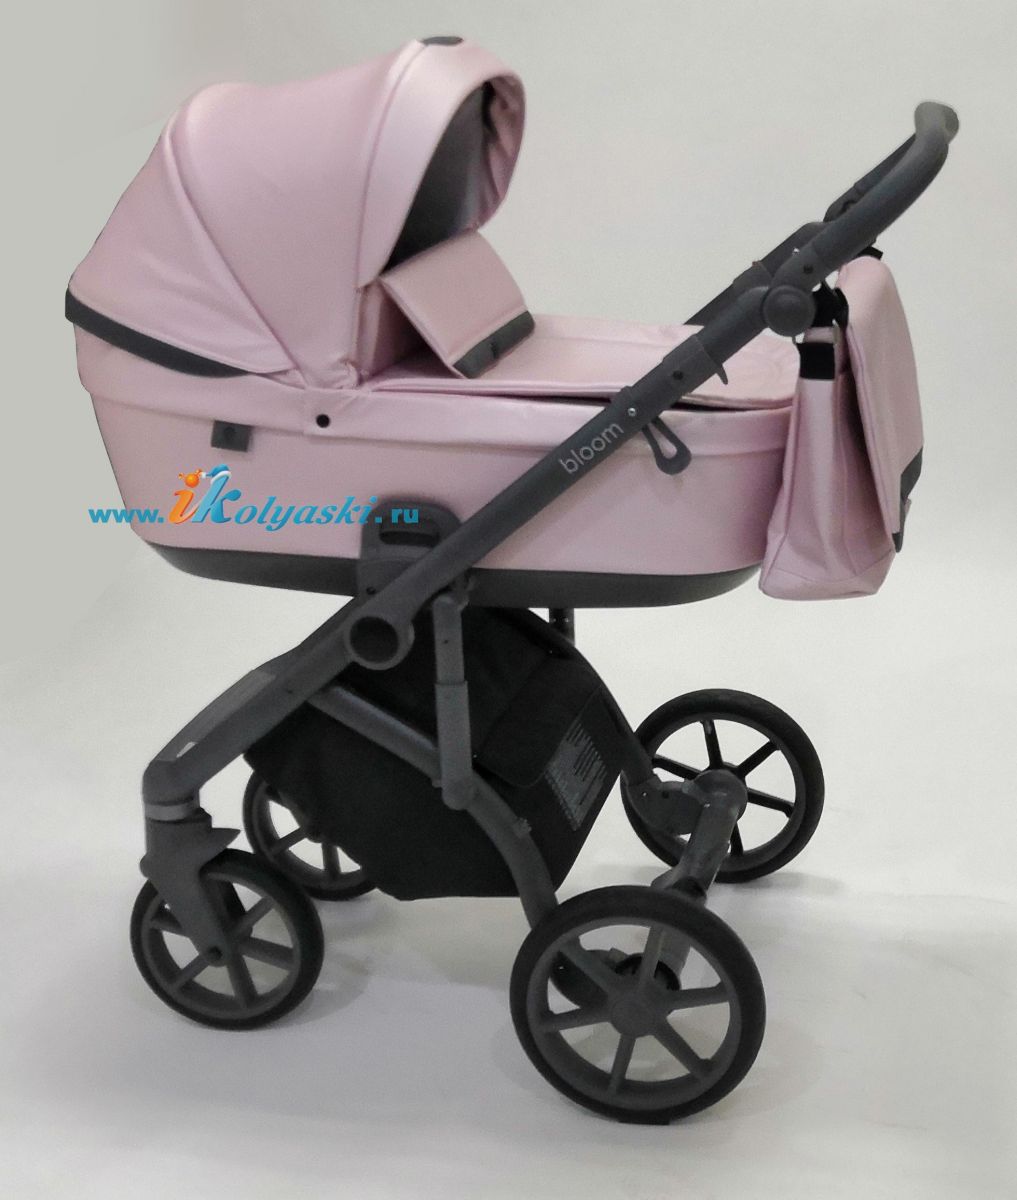 Roan Bloom 2 в 1 детская коляска для новорожденного Роан Блум на гелиевых поворотных колесах с прогулочным блоком - купить в Москве с доставкой по РФ- цвет Pink Perl перламутровая экокожа